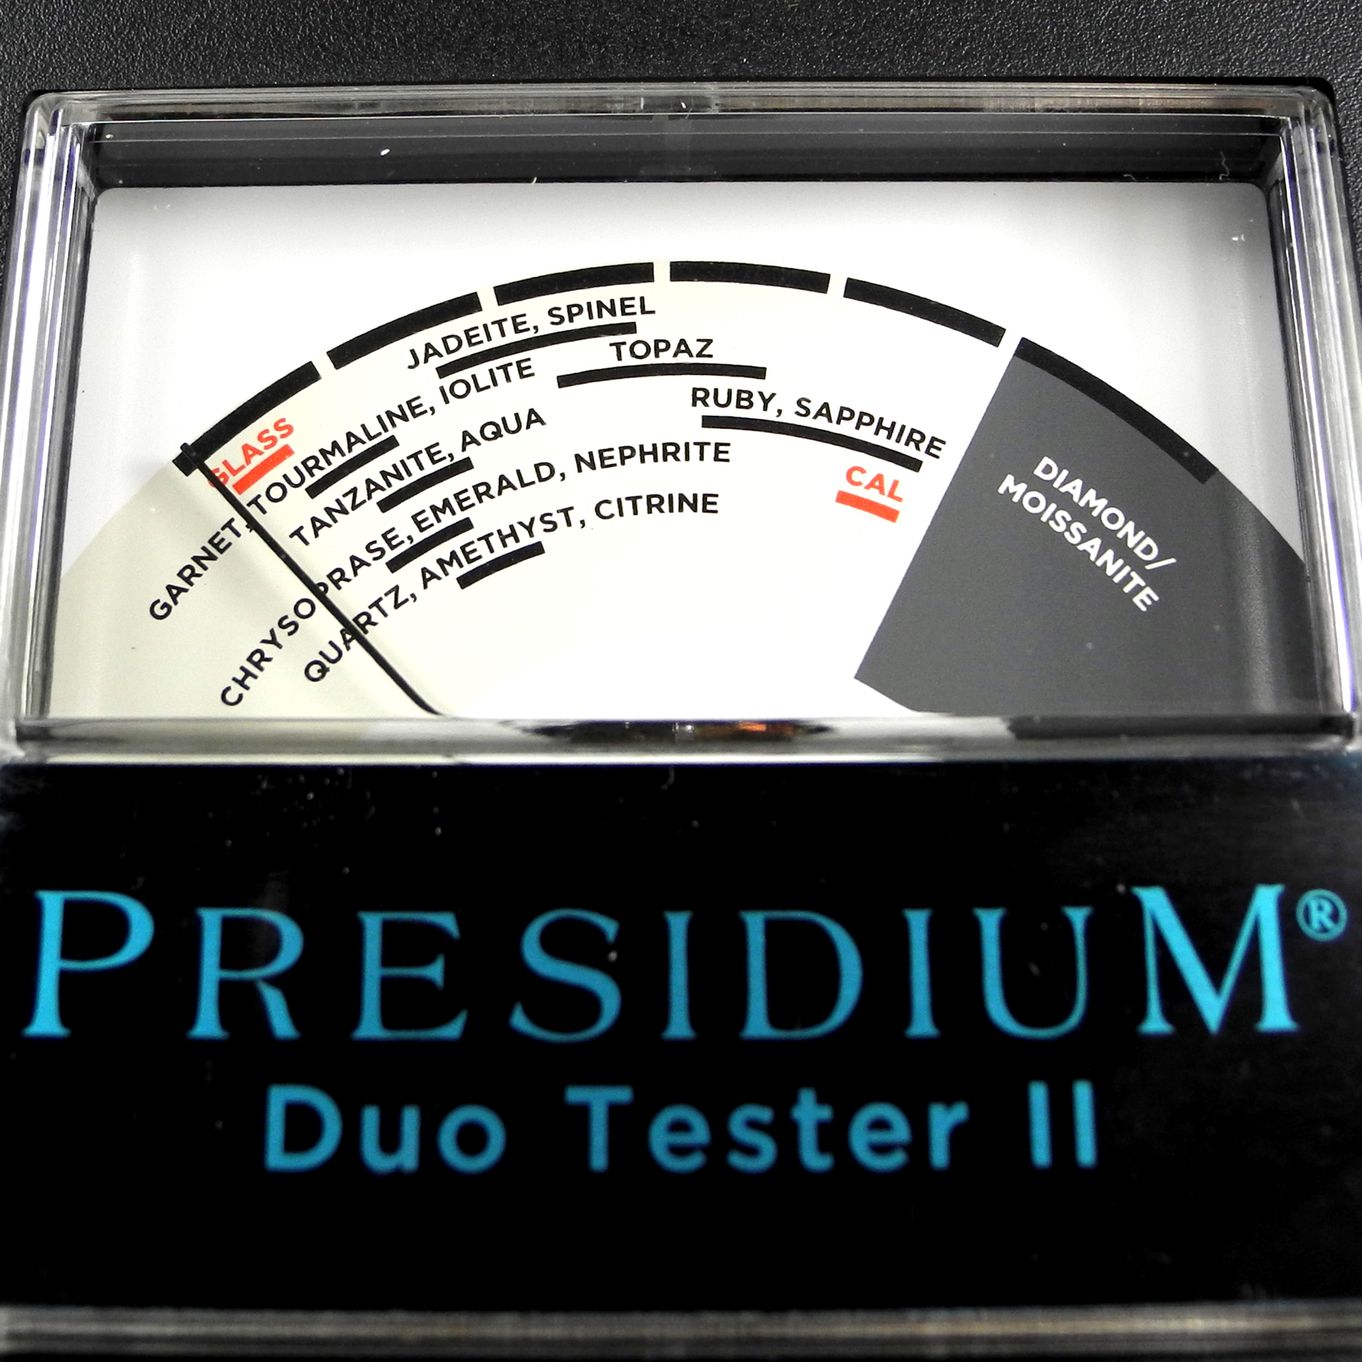  Presidium Duo Tester PDT Diamond Gemstone Tester